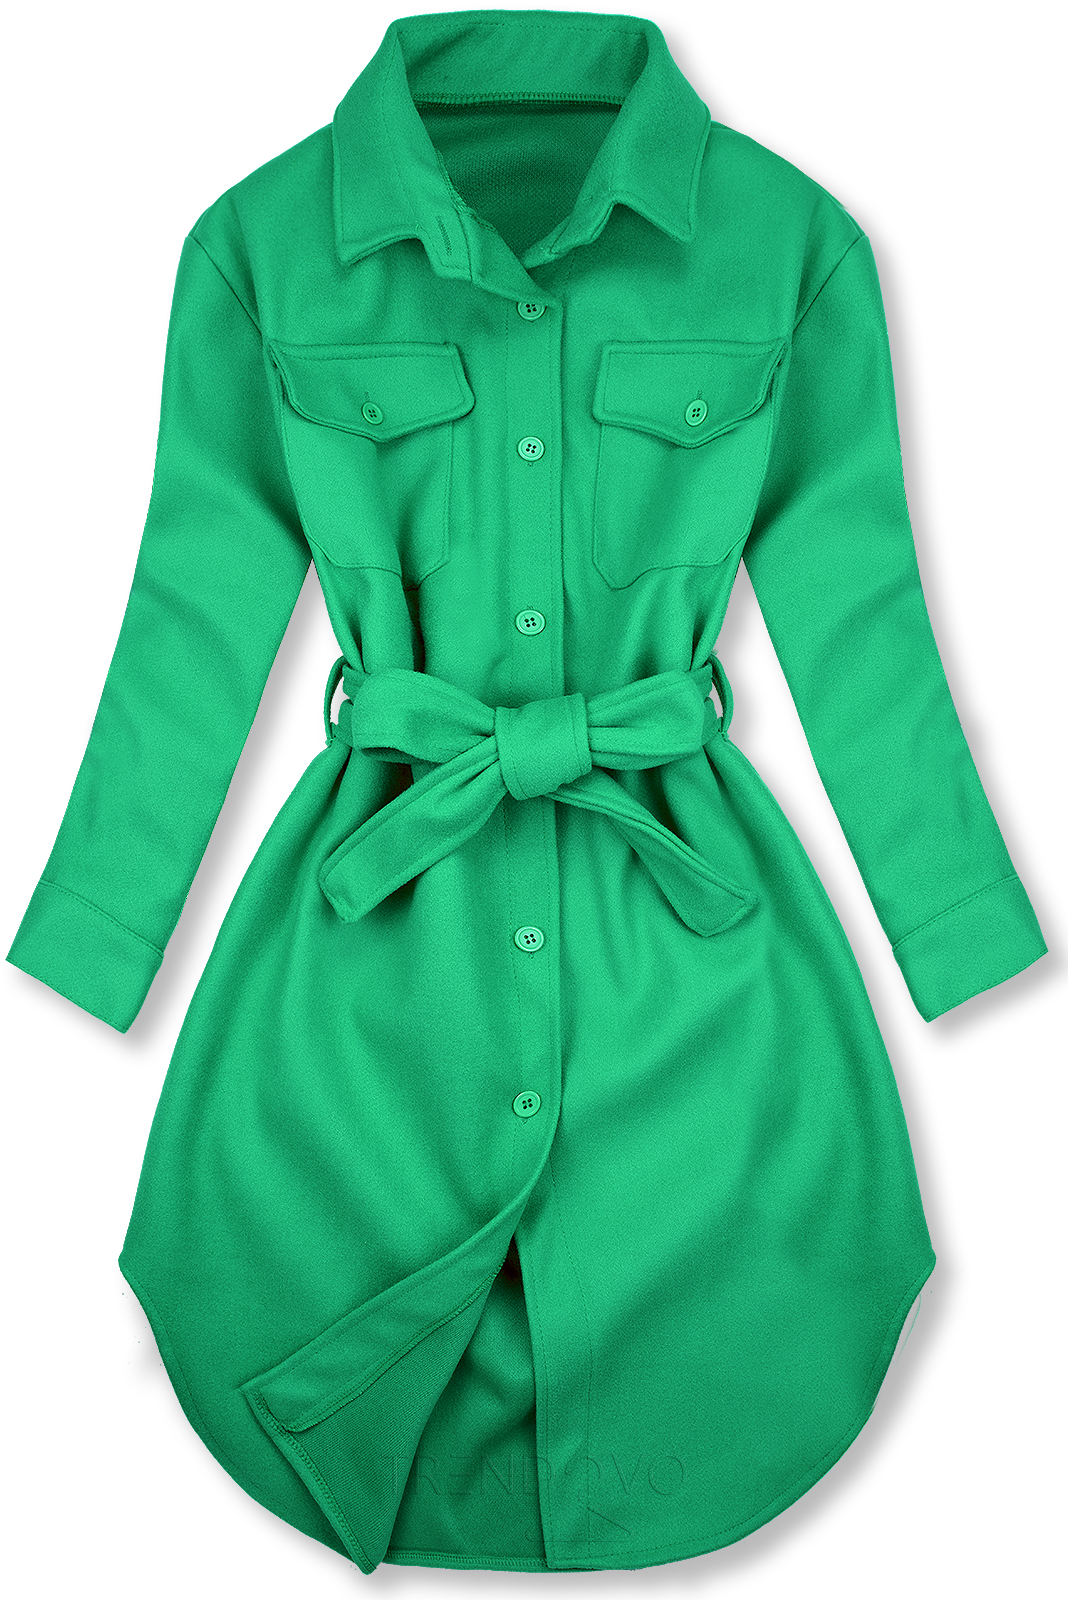 Zelený ľahký plášť